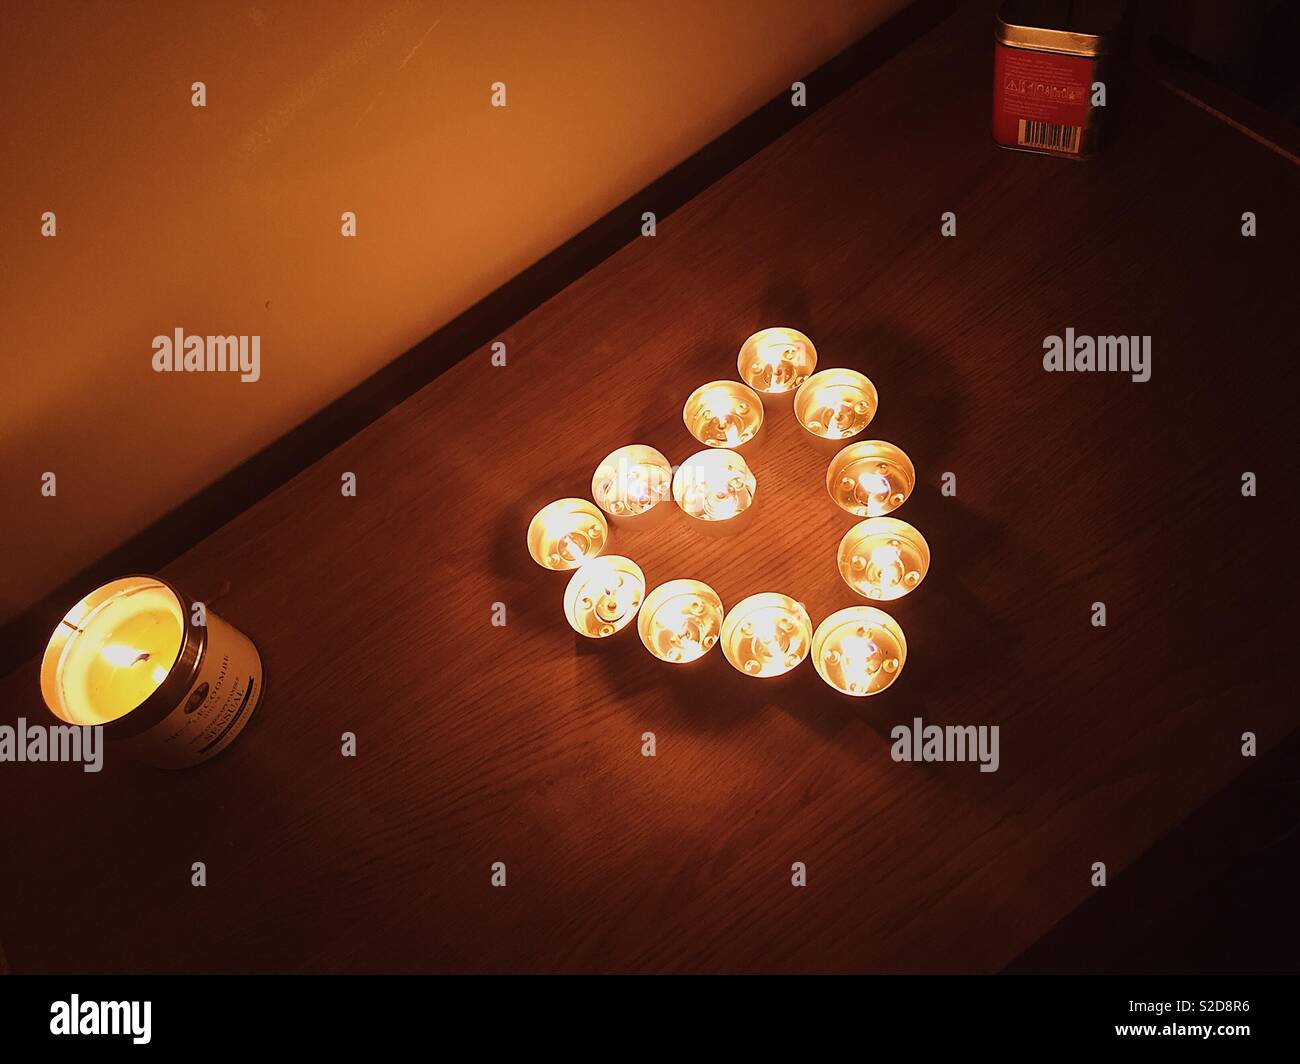 Hübsche Teelichter in einem Herzen Stockfotografie - Alamy